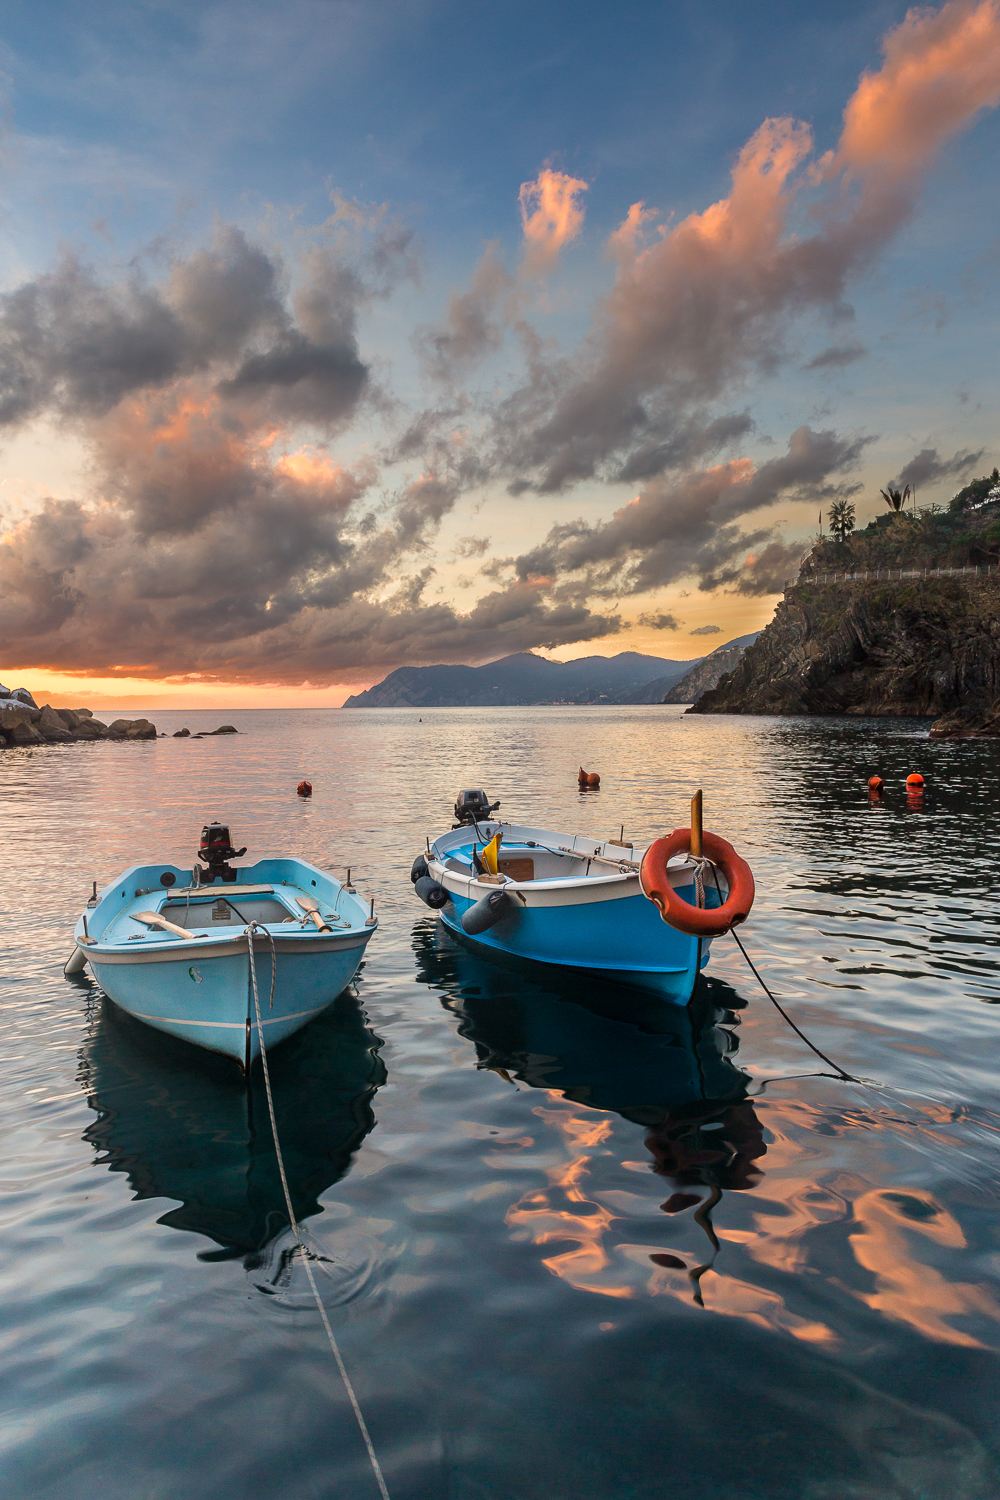 barques au coucher du soleil pendant un voyage photo dans les Cinque Terre